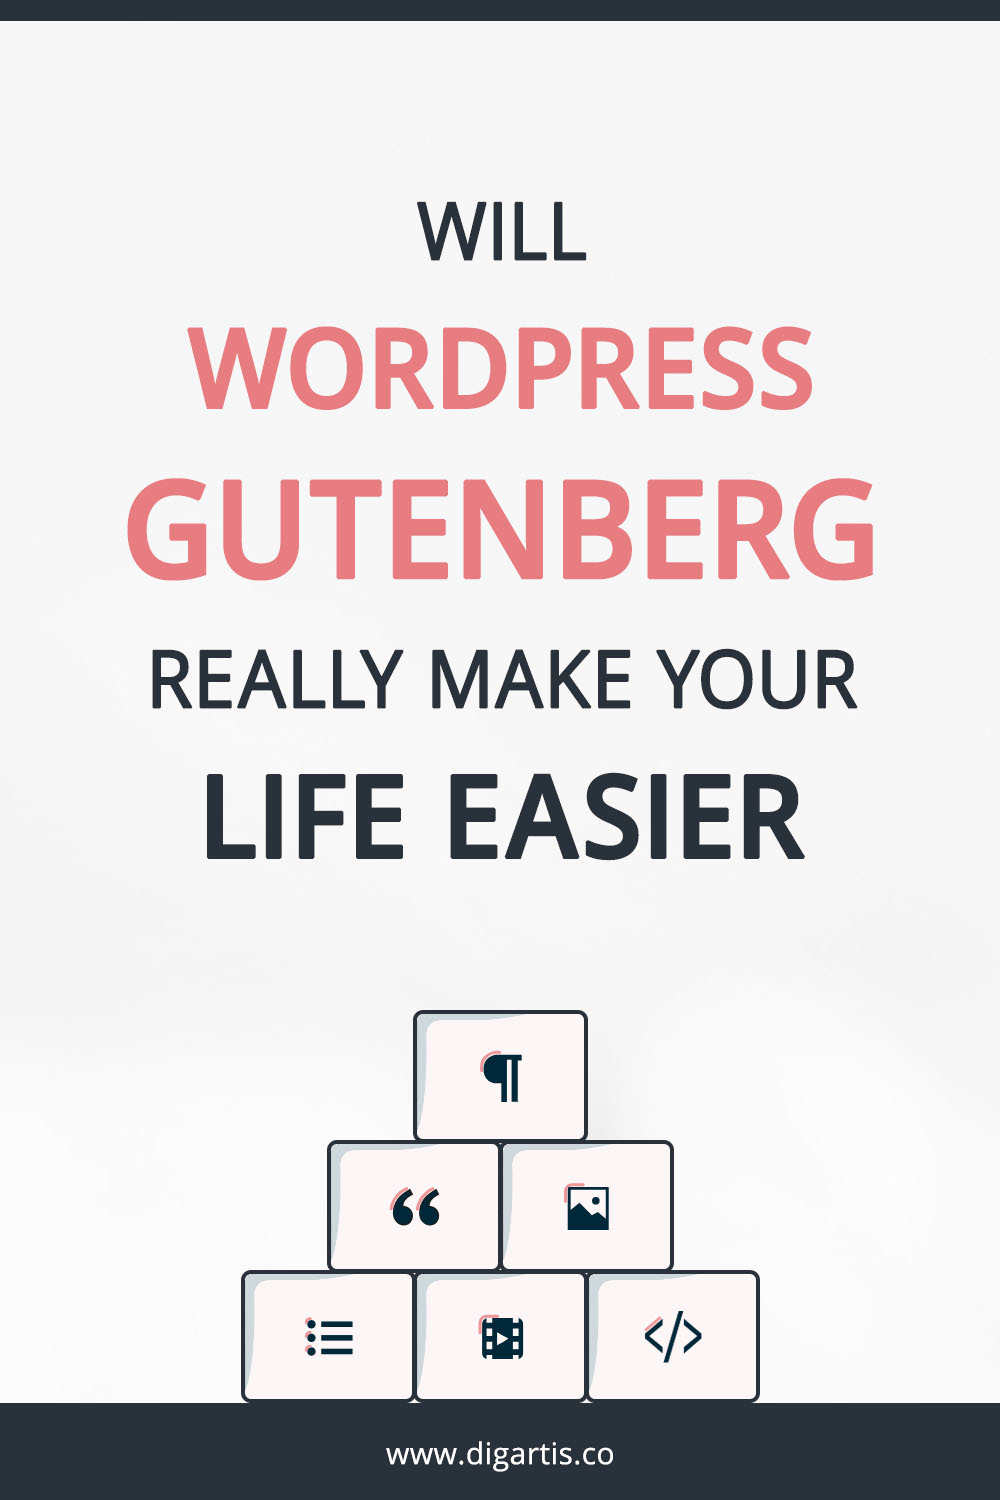 Will WordPress Gutenberg really make your life easier